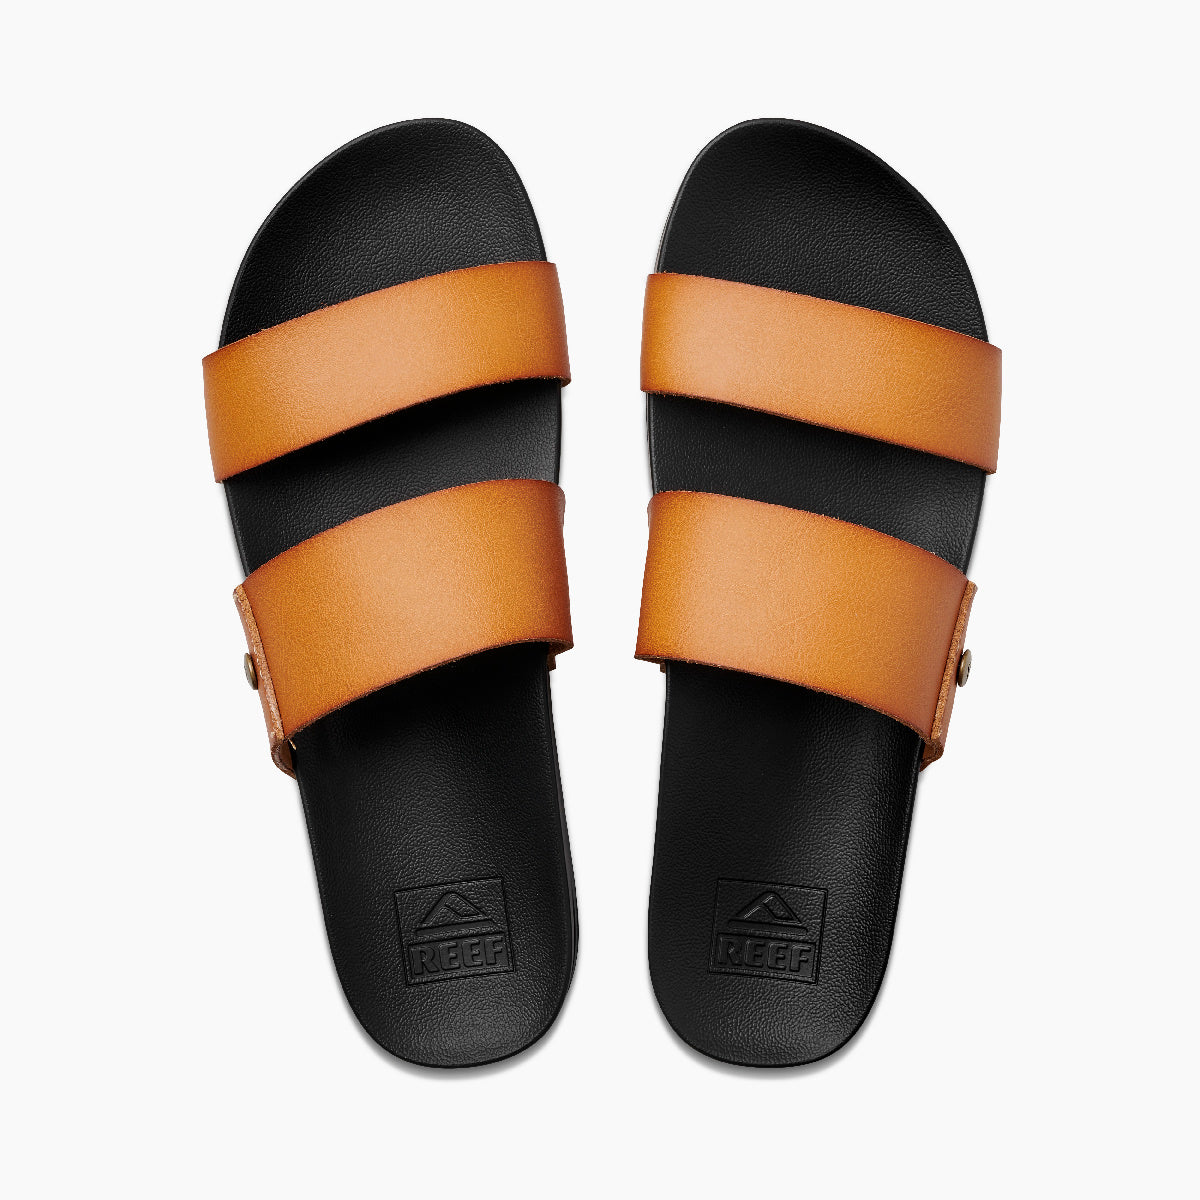 Reef Cushion Vista Sandals - 88 Gear